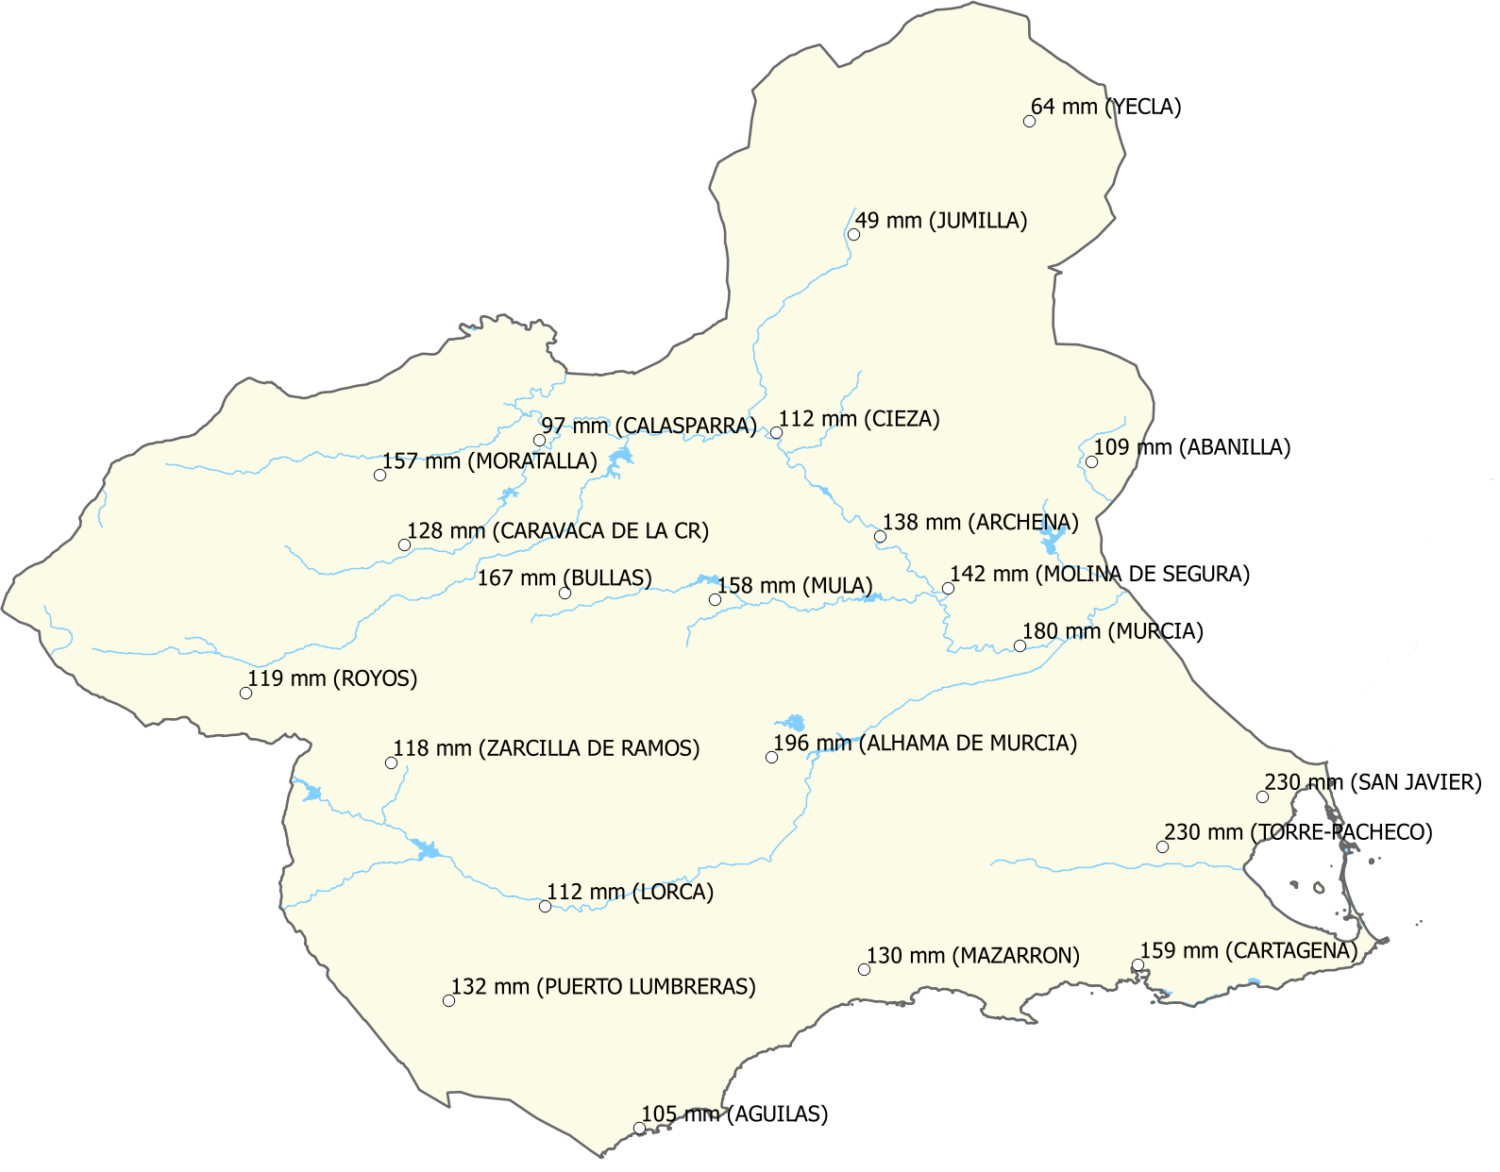 Precipitaciones registradas en las estaciones de la Región de Murcia (elaborada a partir de información publicada en www.aemet.es)